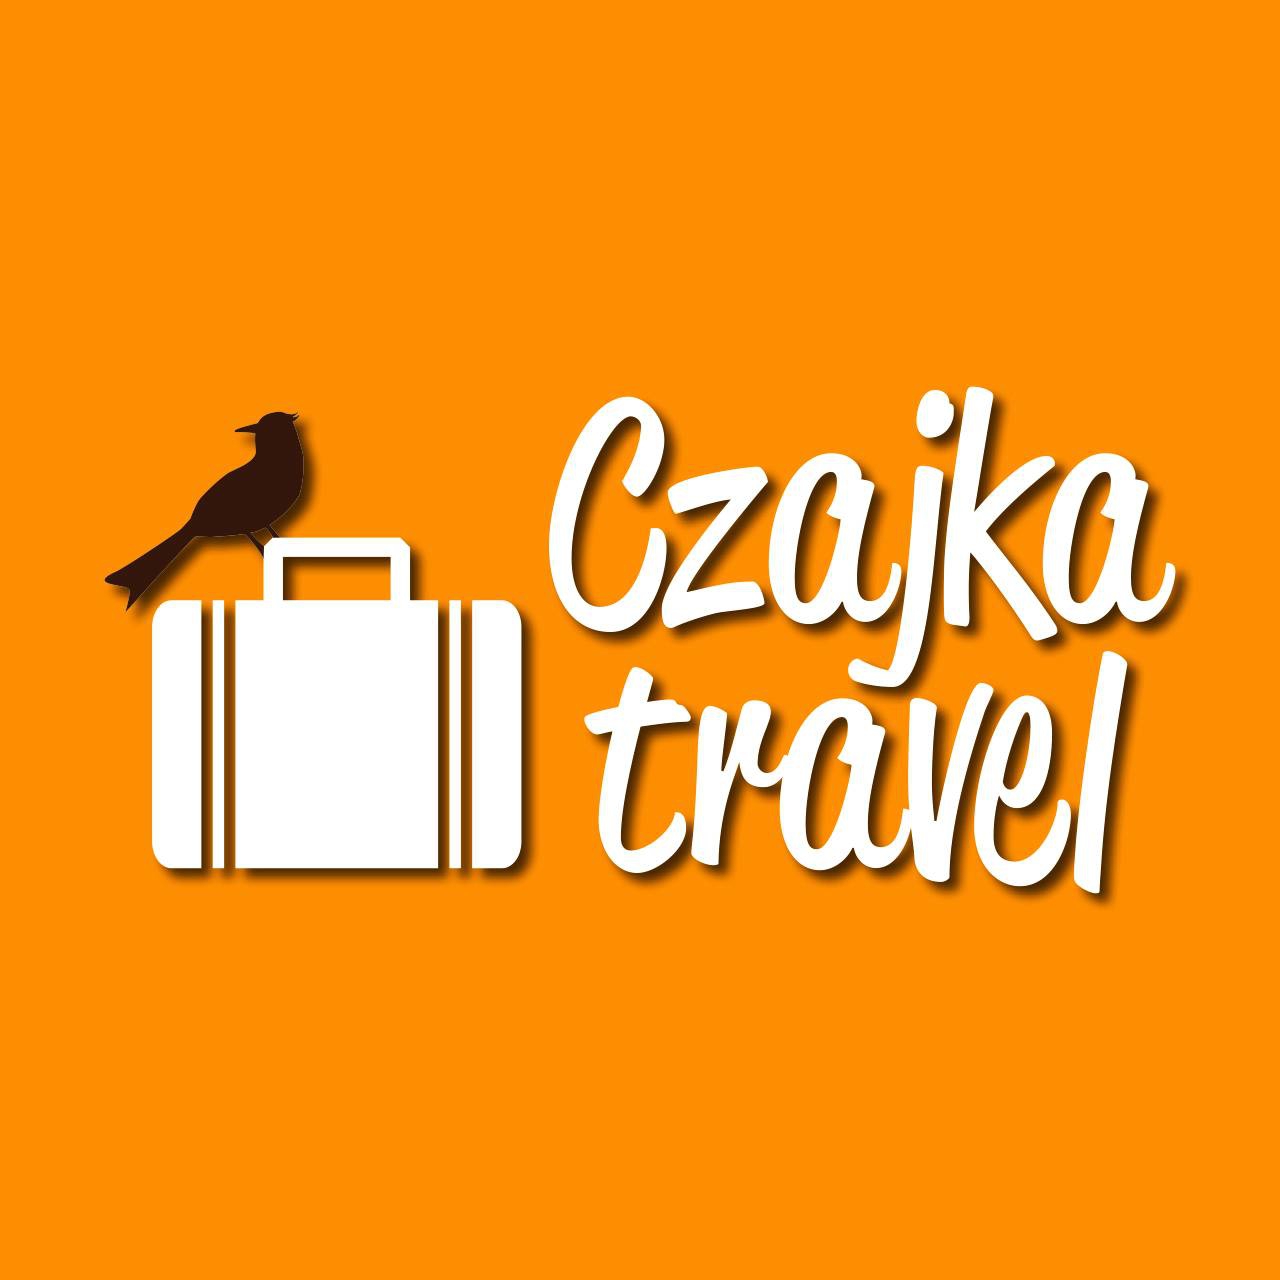 CZAJKA TRAVEL ul. Szlak 65, pok. 803 (8 piętro) 31-153 Kraków tel. 12 444 72 25; kom. 506 965 755 www.czajka.travel.pl NIP 685-216-22-22 Dlaczego warto?